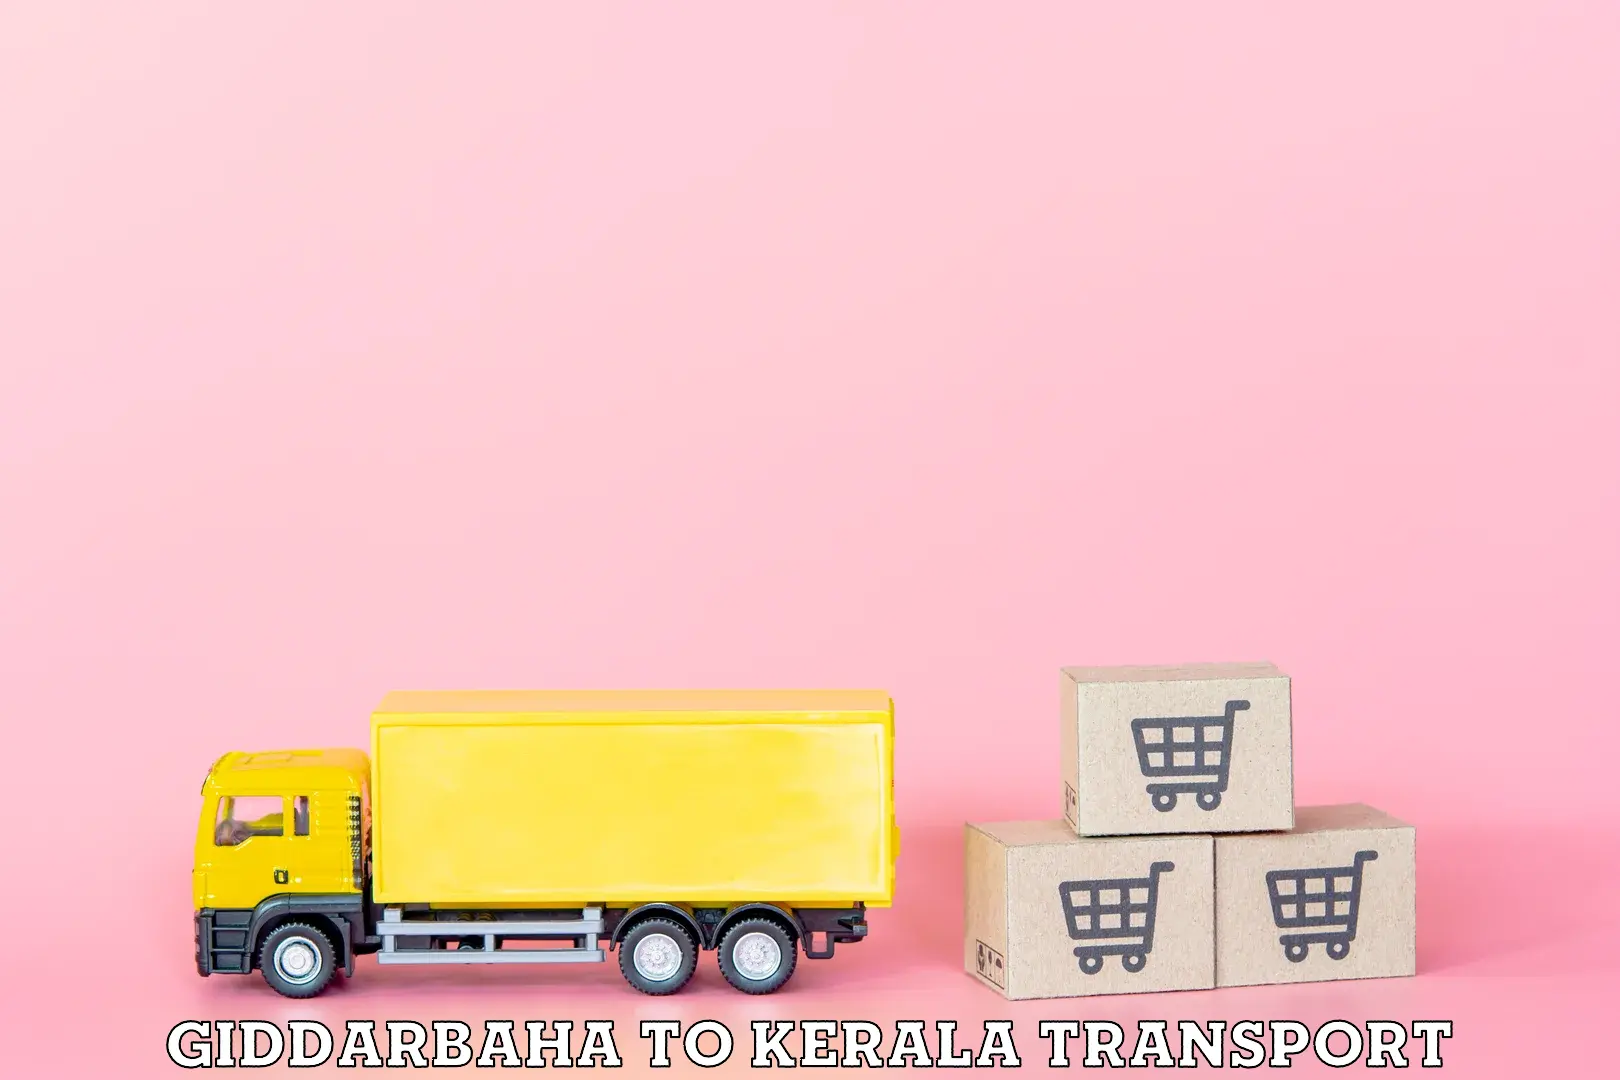 Express transport services Giddarbaha to Calicut